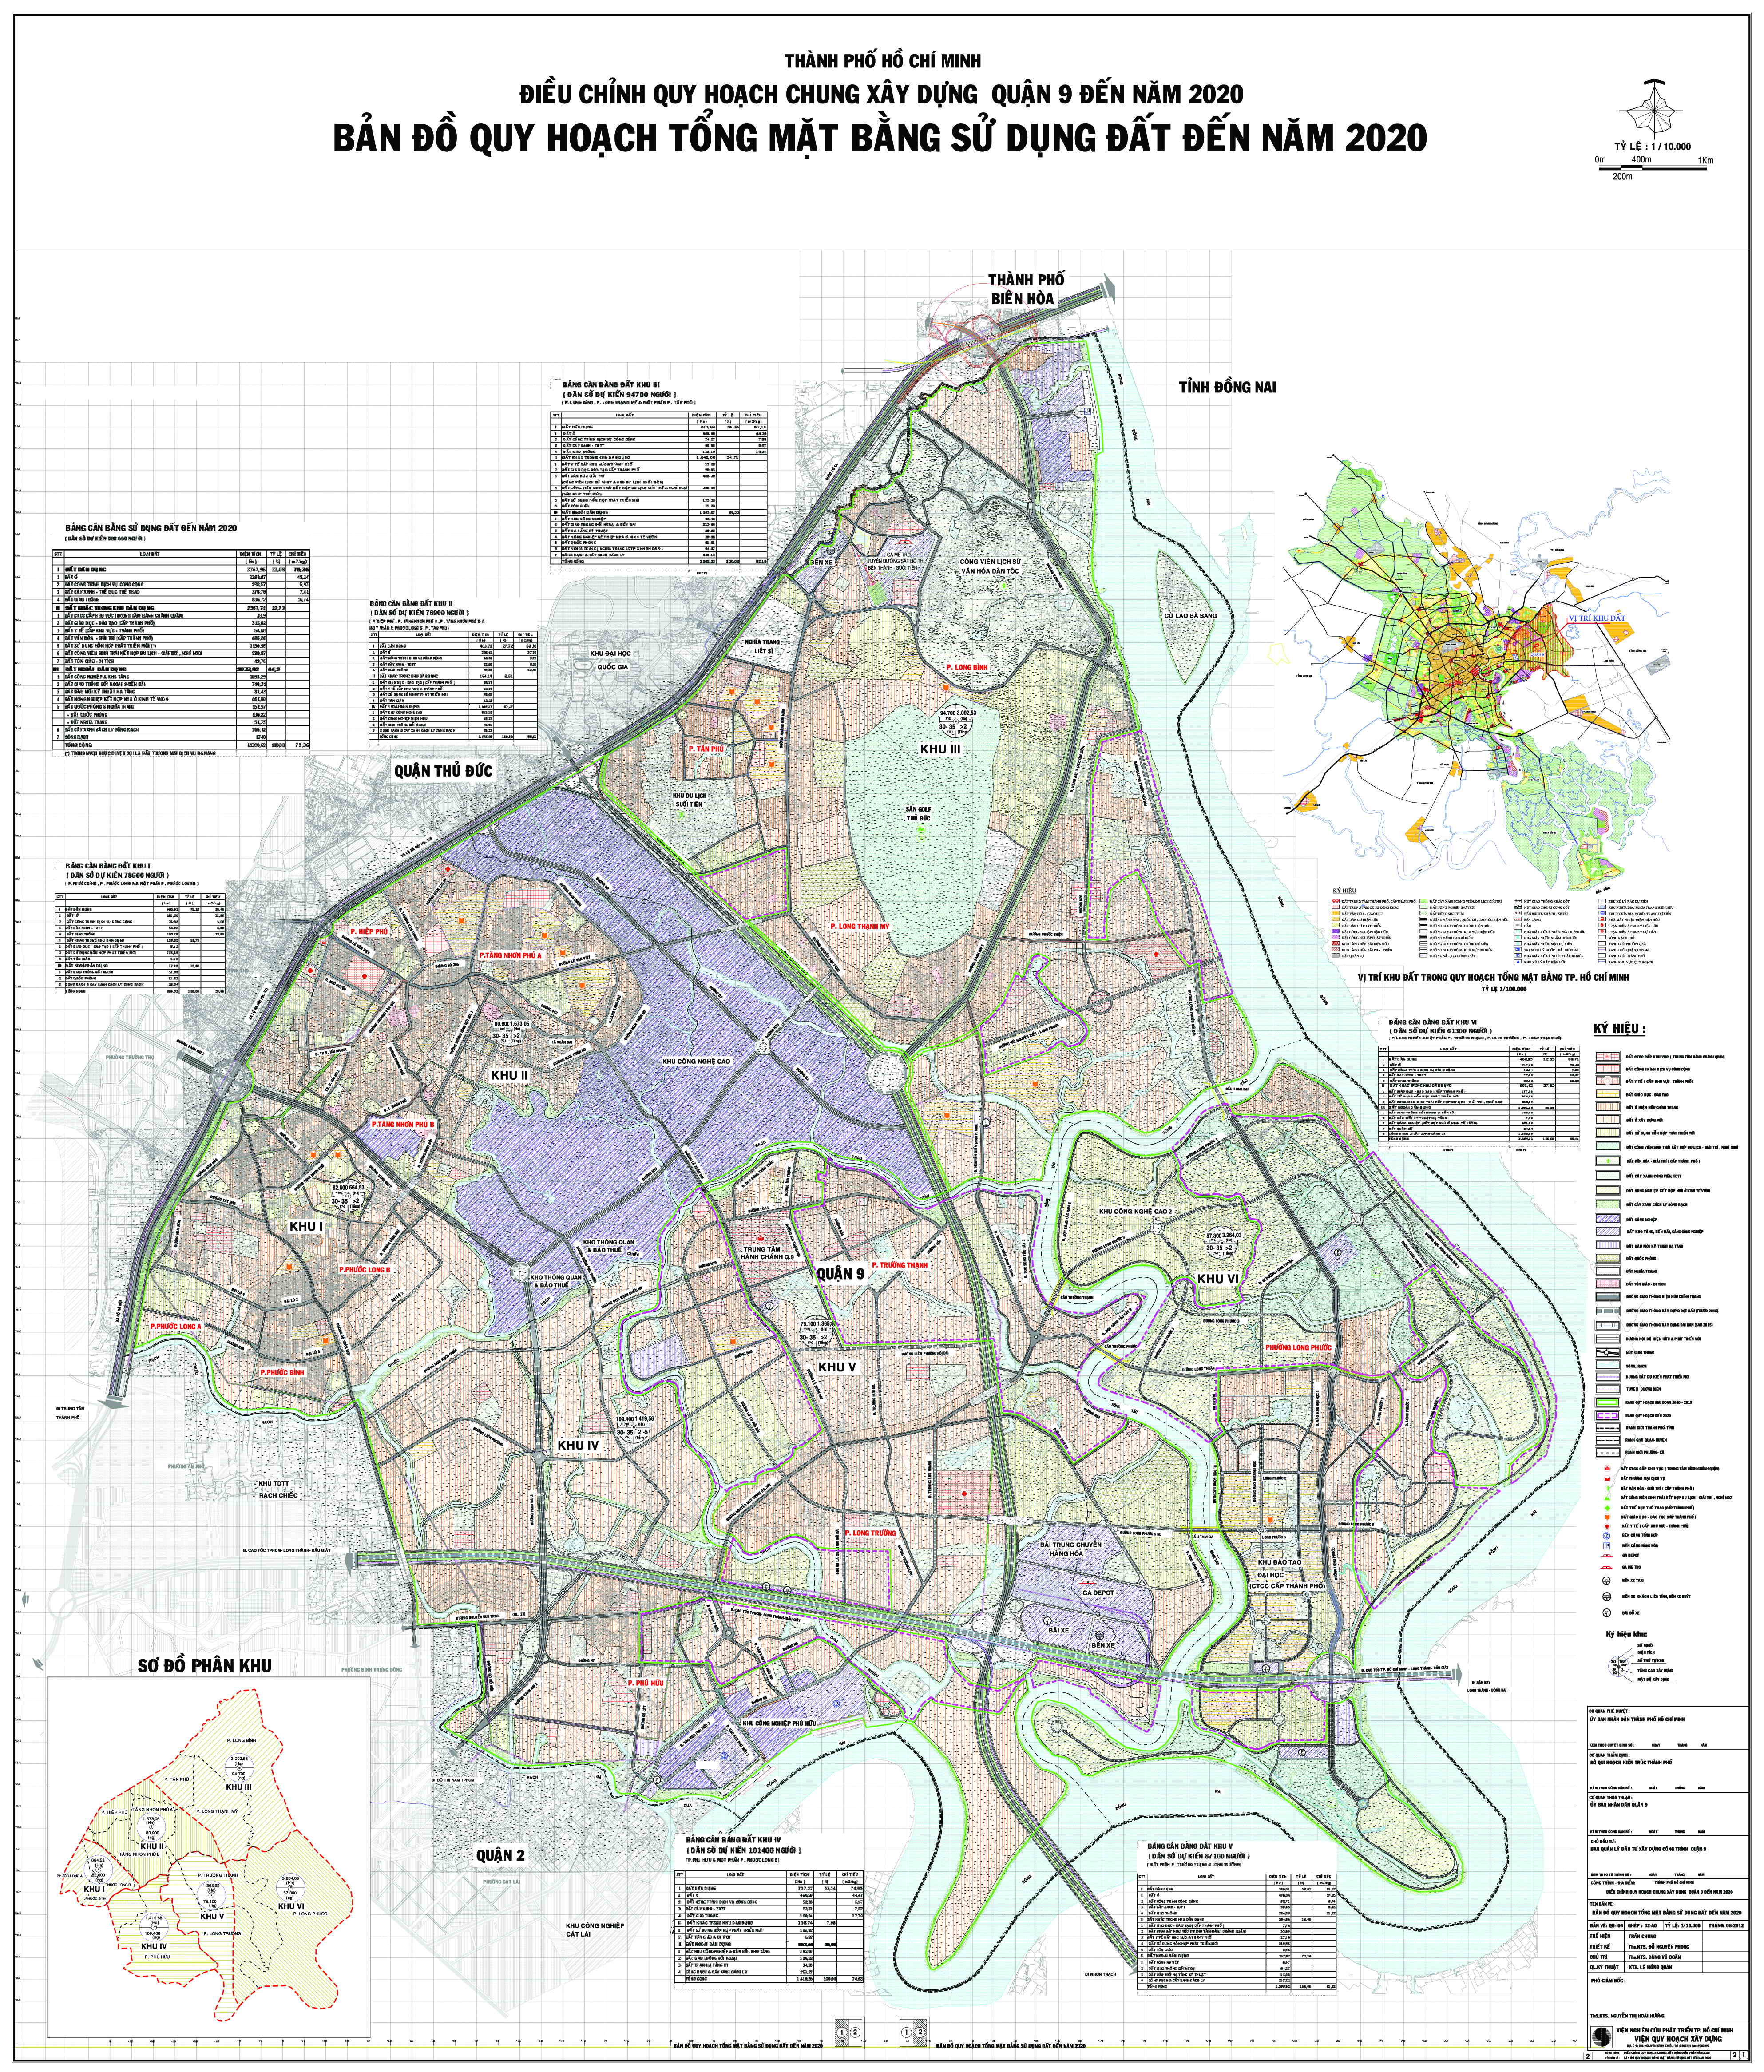 Bản đồ các phường tại Quận Bình Thạnh hiện nay